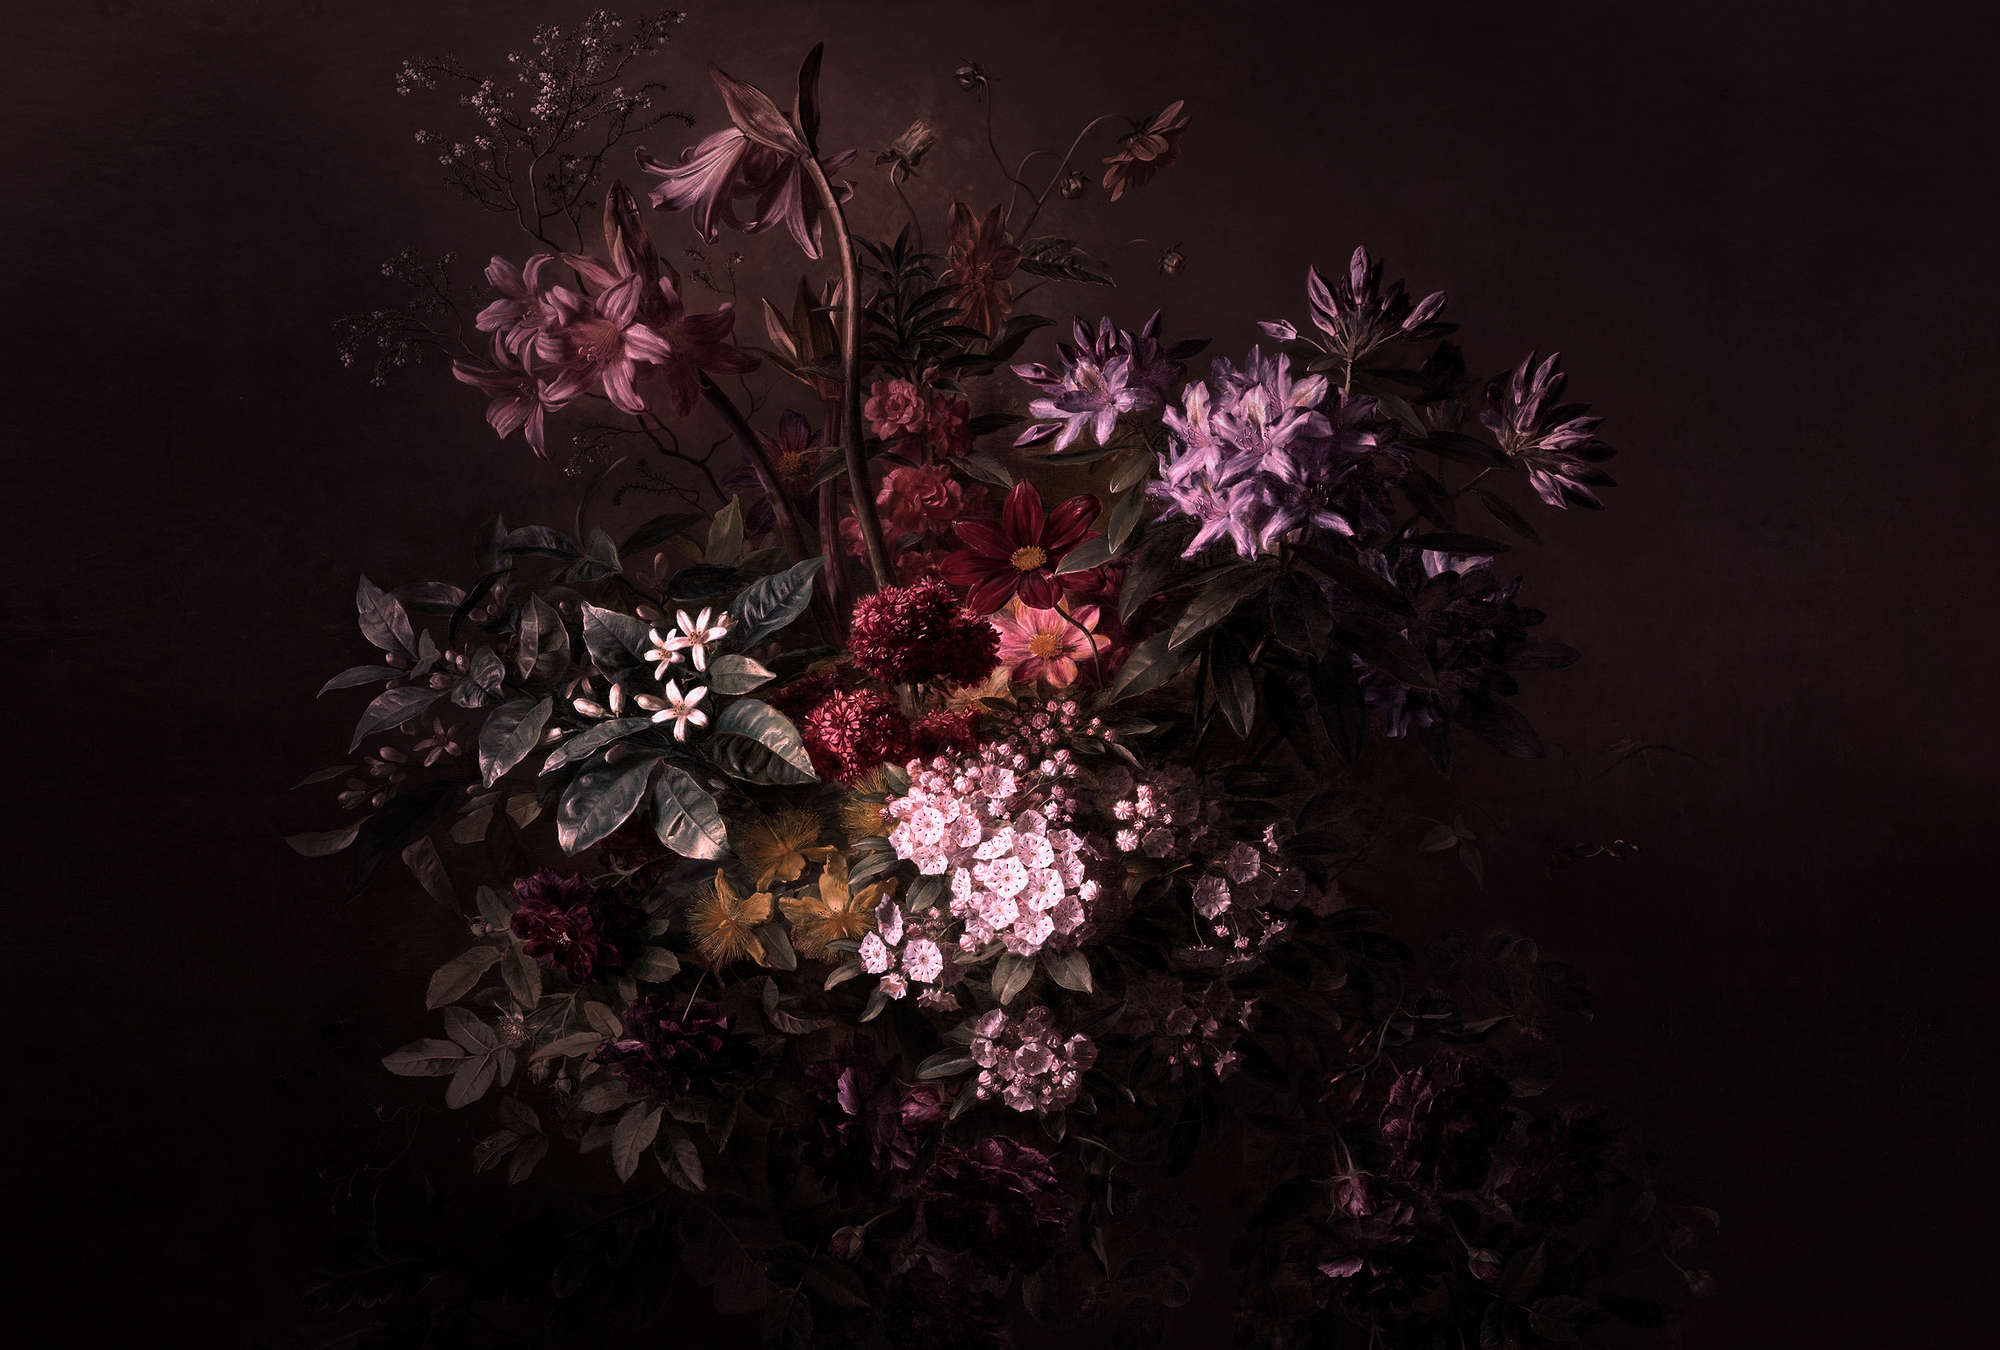             Fototapete Blumen Stillleben – Walls by Patel
        